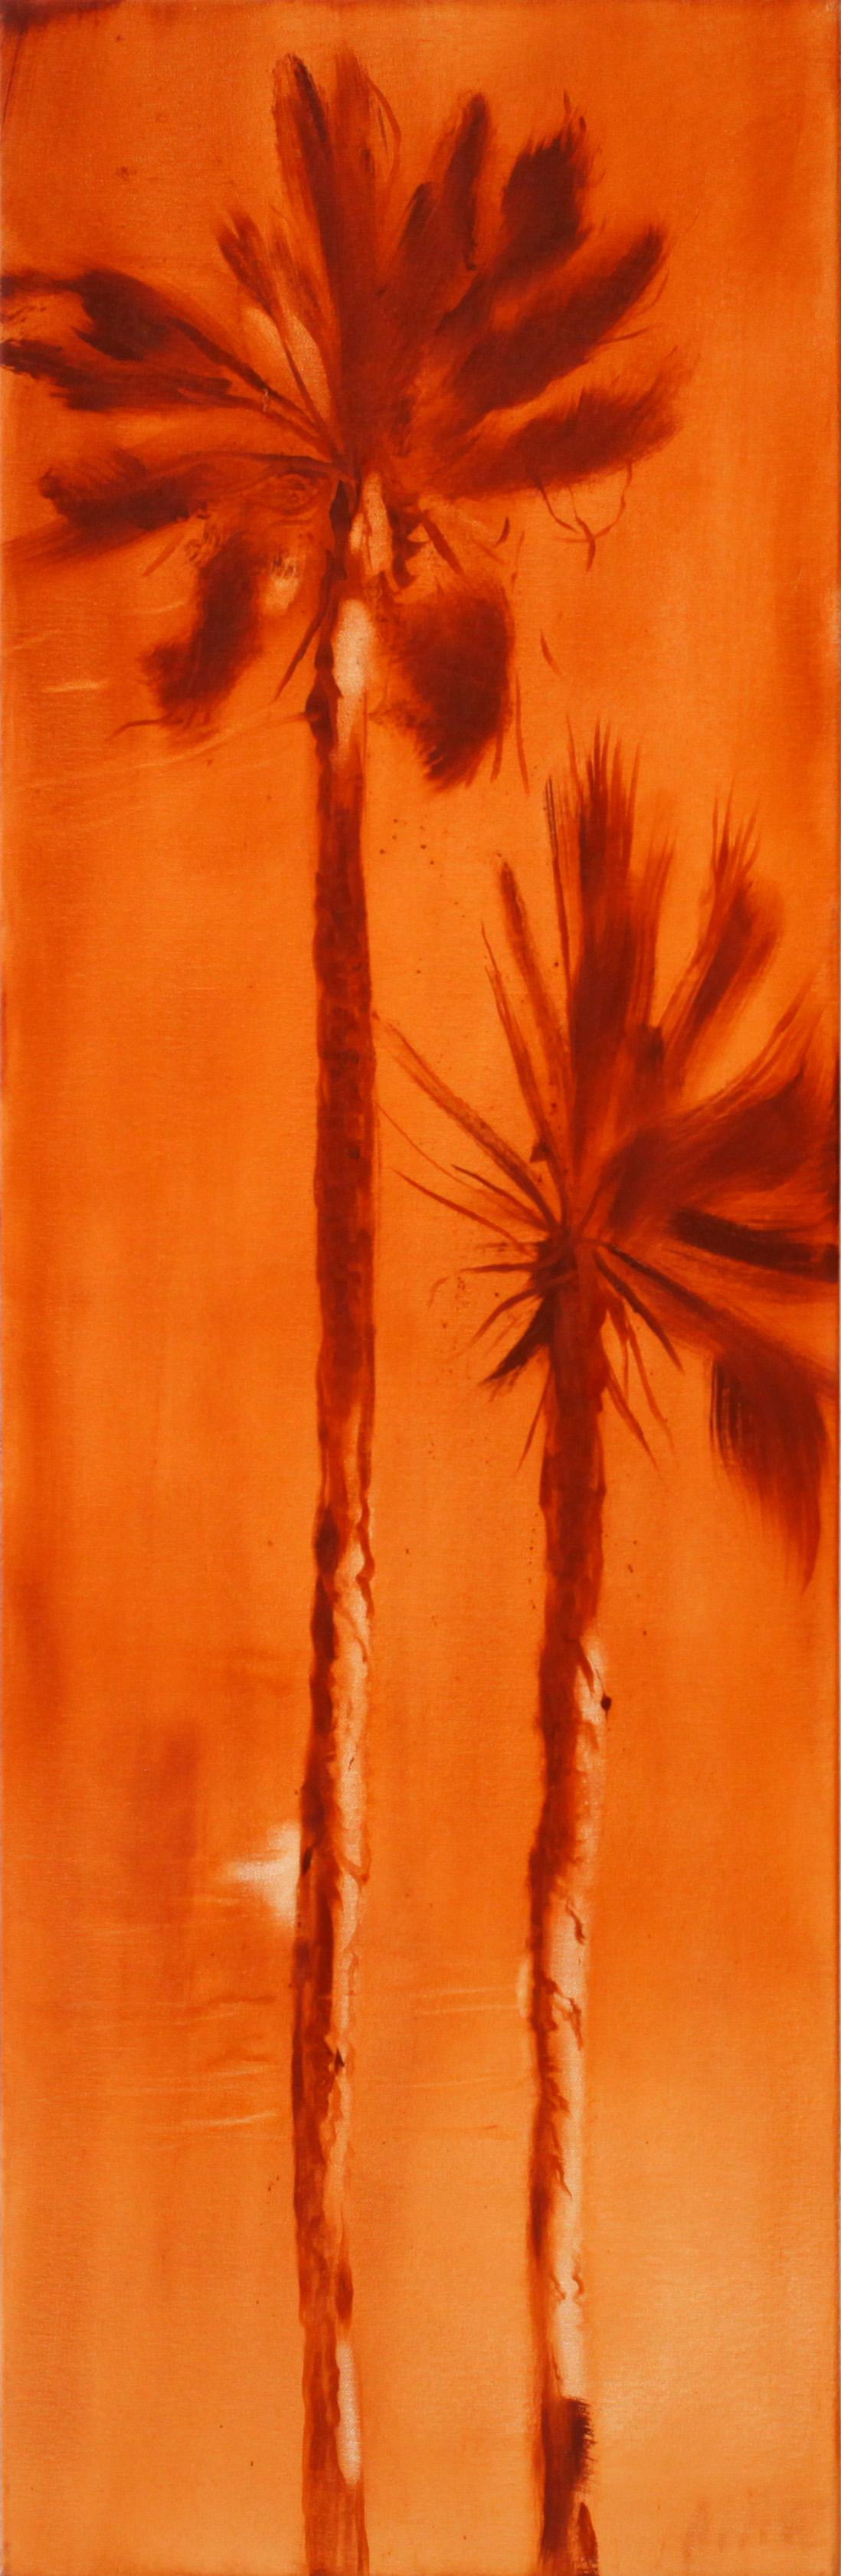 Landscape Painting Perry Vàsquez - Peinture à l'huile conceptuelle et réaliste de palmier, "Inferno 4".